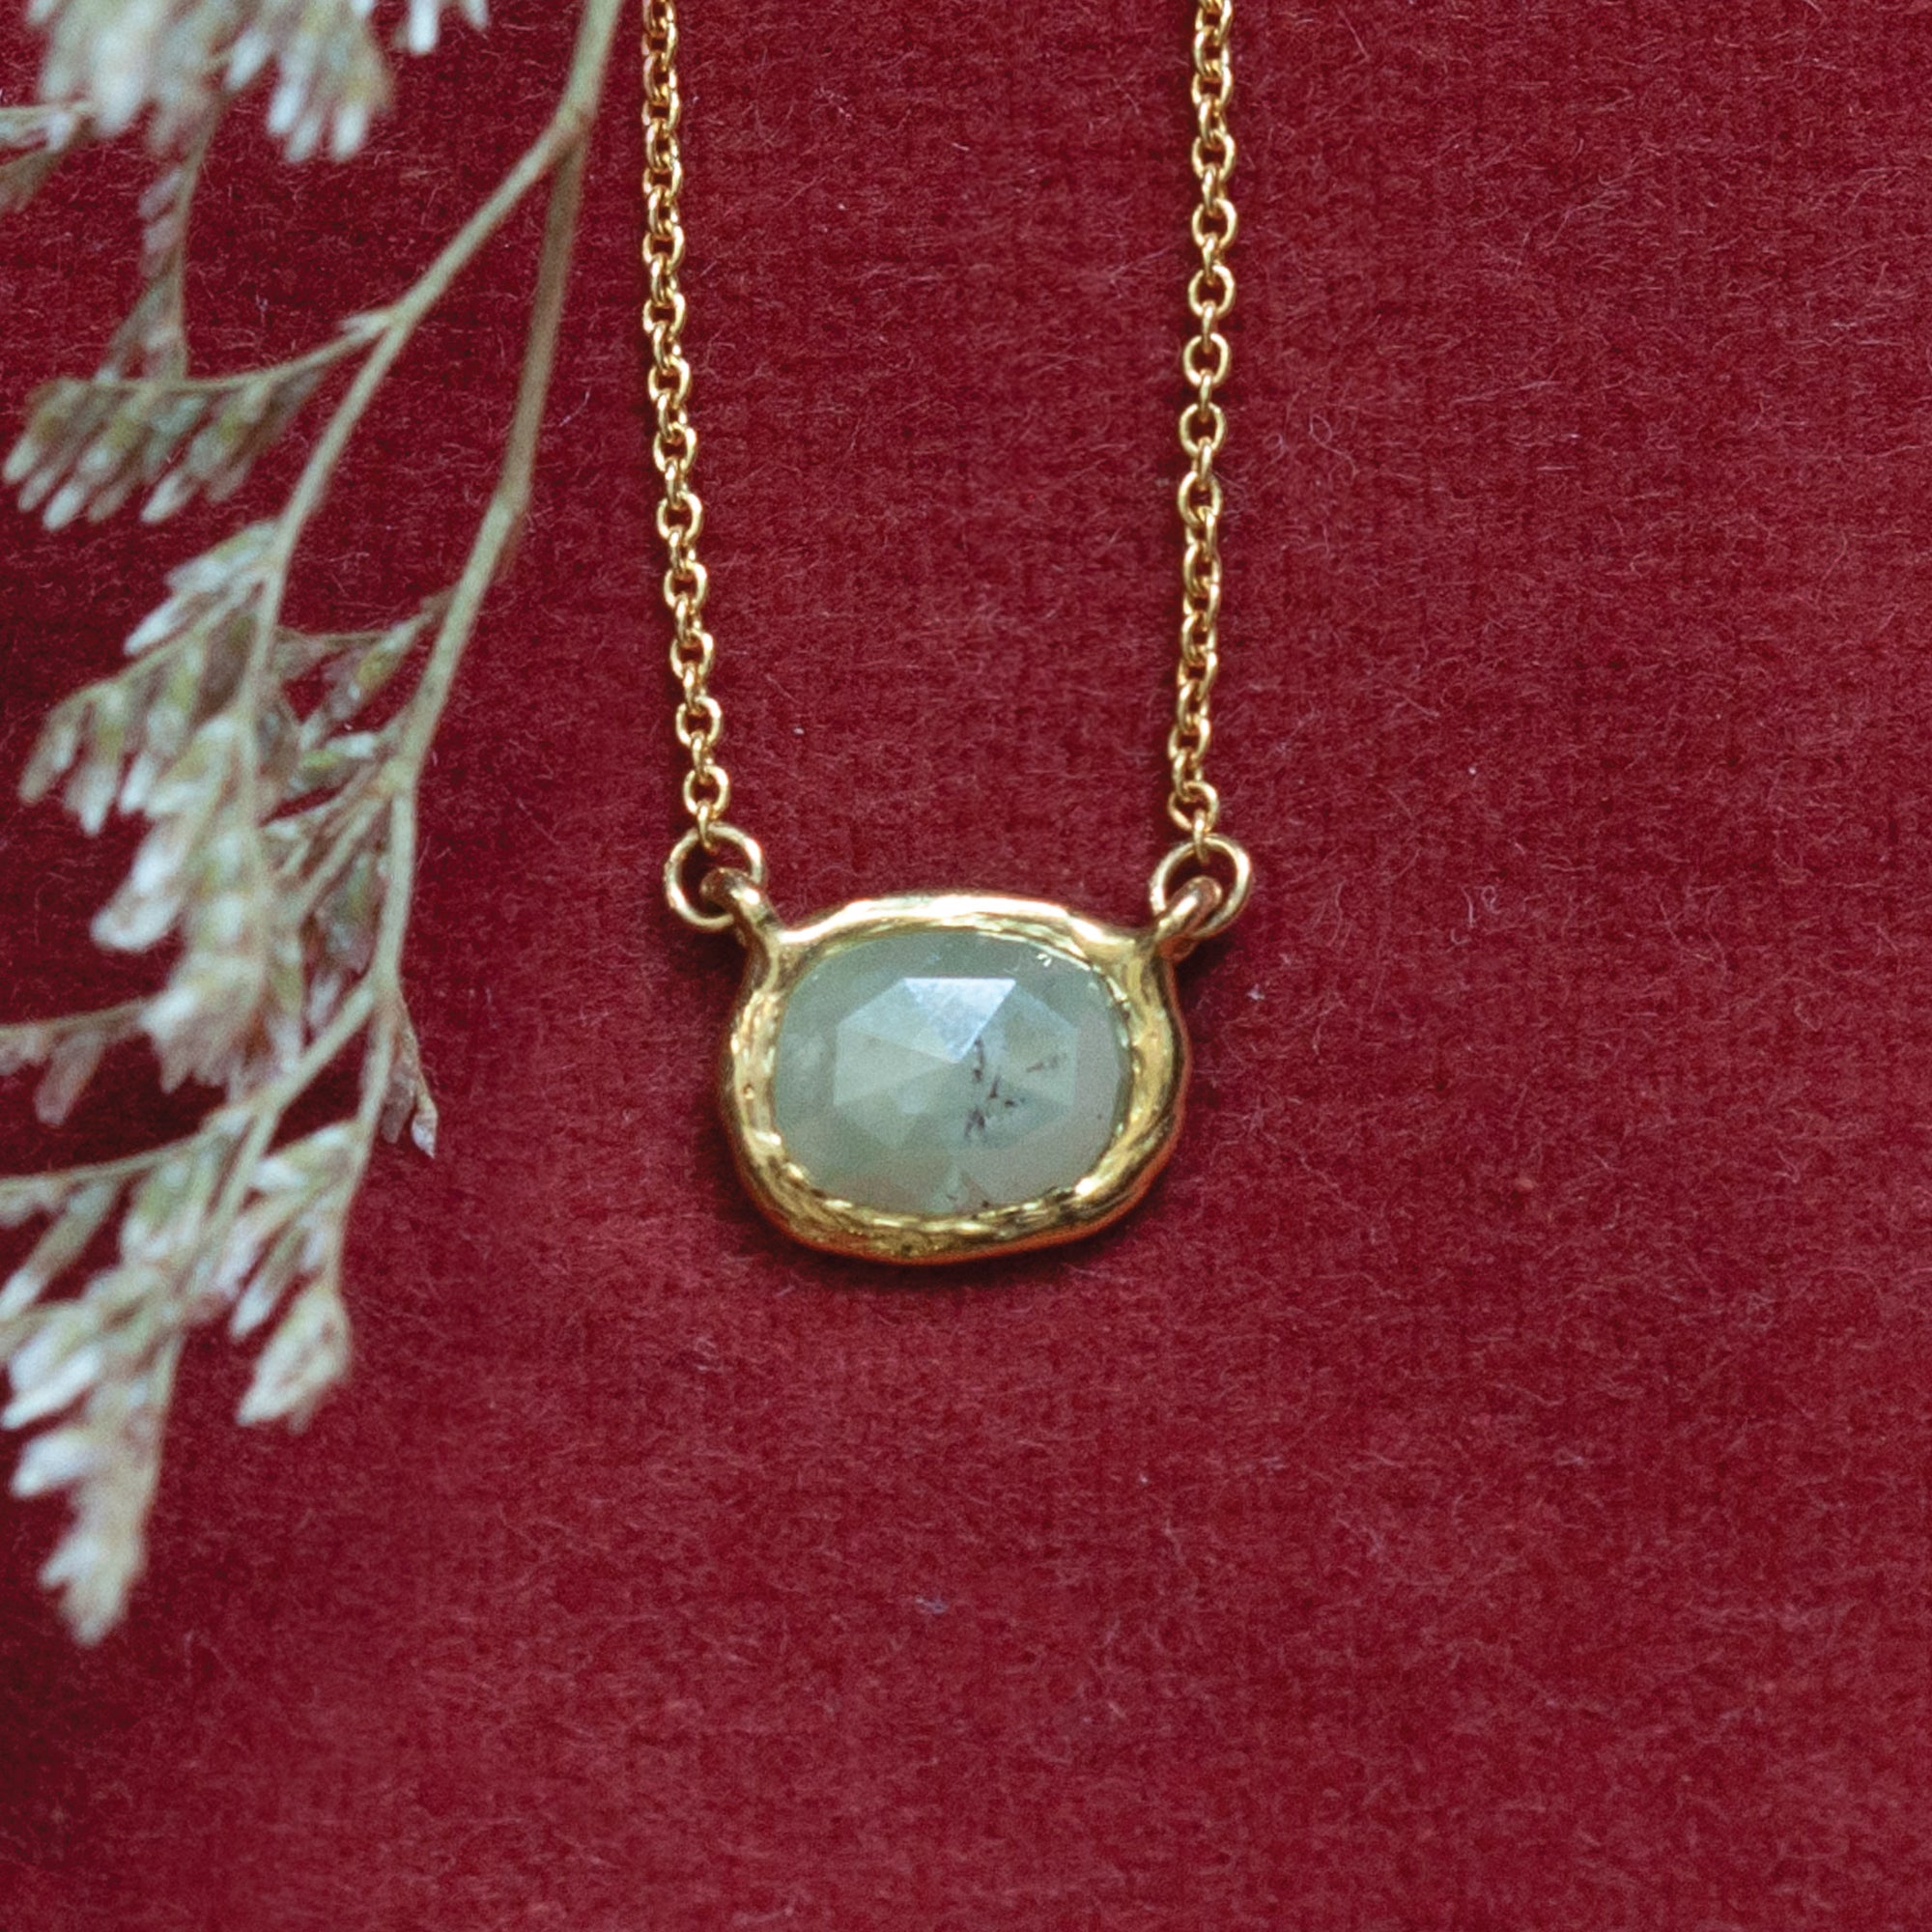 Oval Rose Cut Diamond Necklace